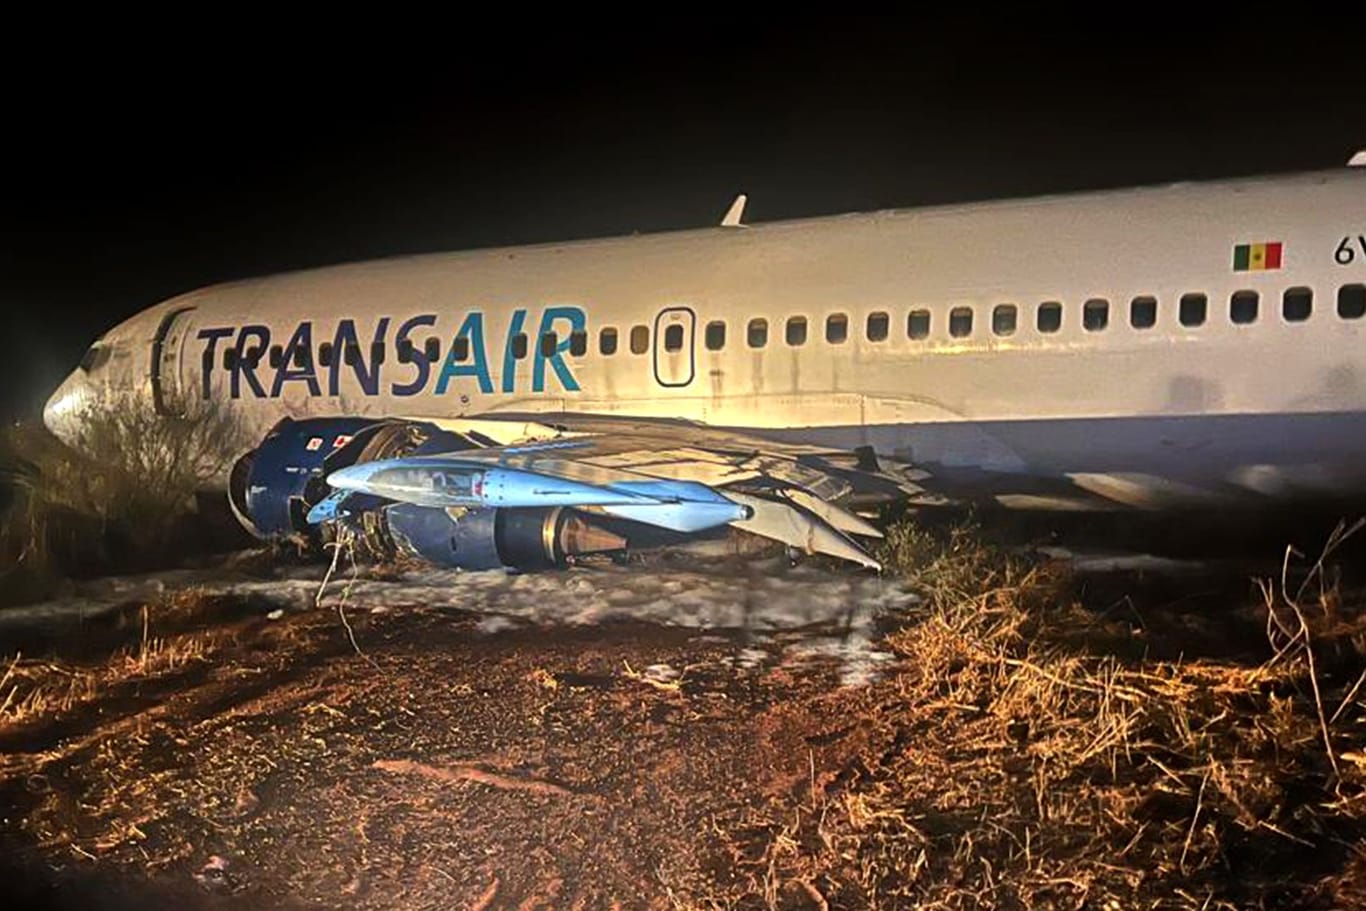 Boeing 747 von Landebahn abgekommen - 11 Verletzte